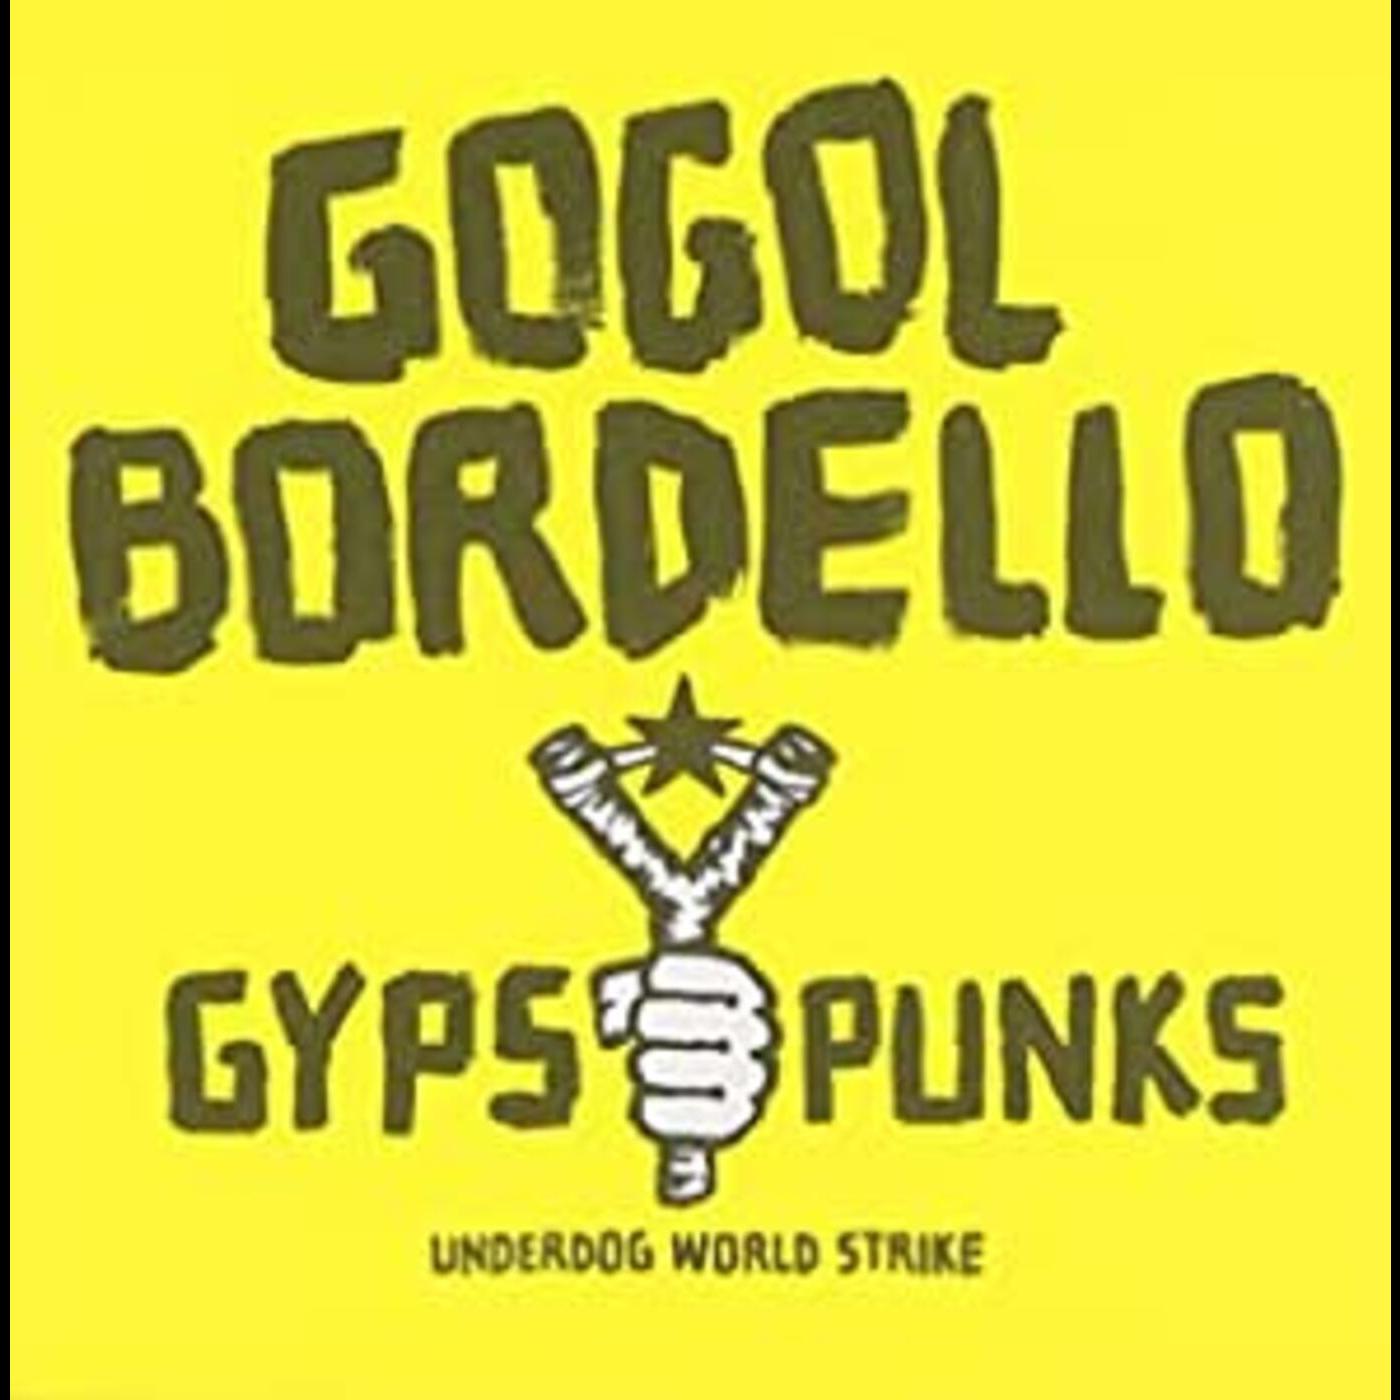 Gogol Bordello | Gypsy Punks Underdog World Strike | CD